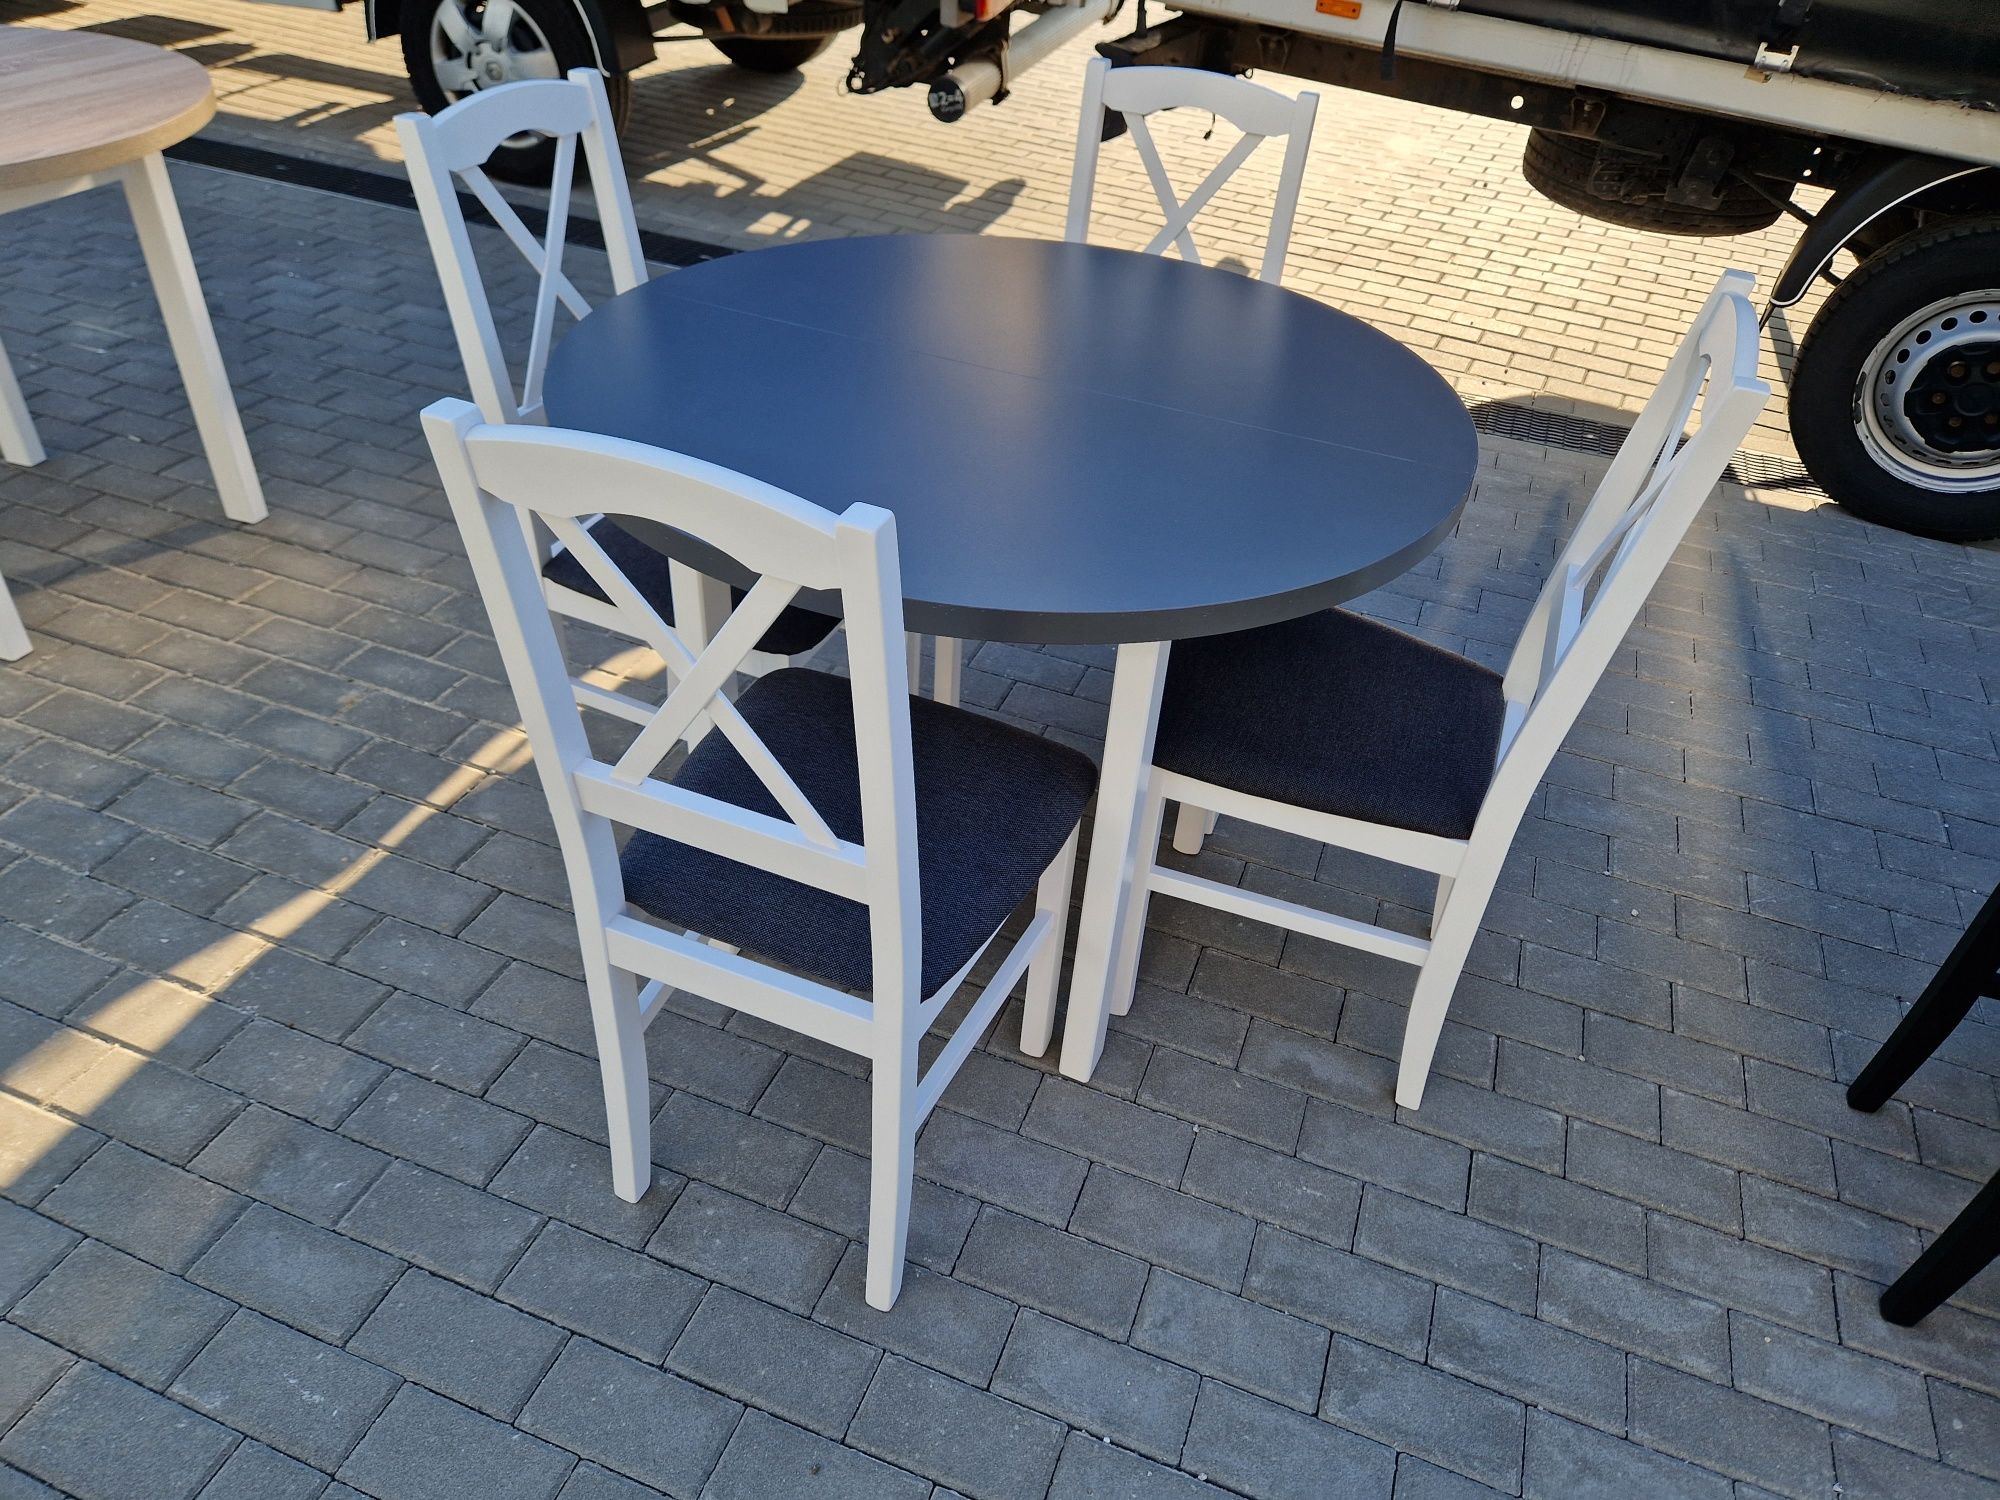 Nowe: Stół okrągły + 4 krzesła, bialy / blat grafit + grafit ( krzyż )